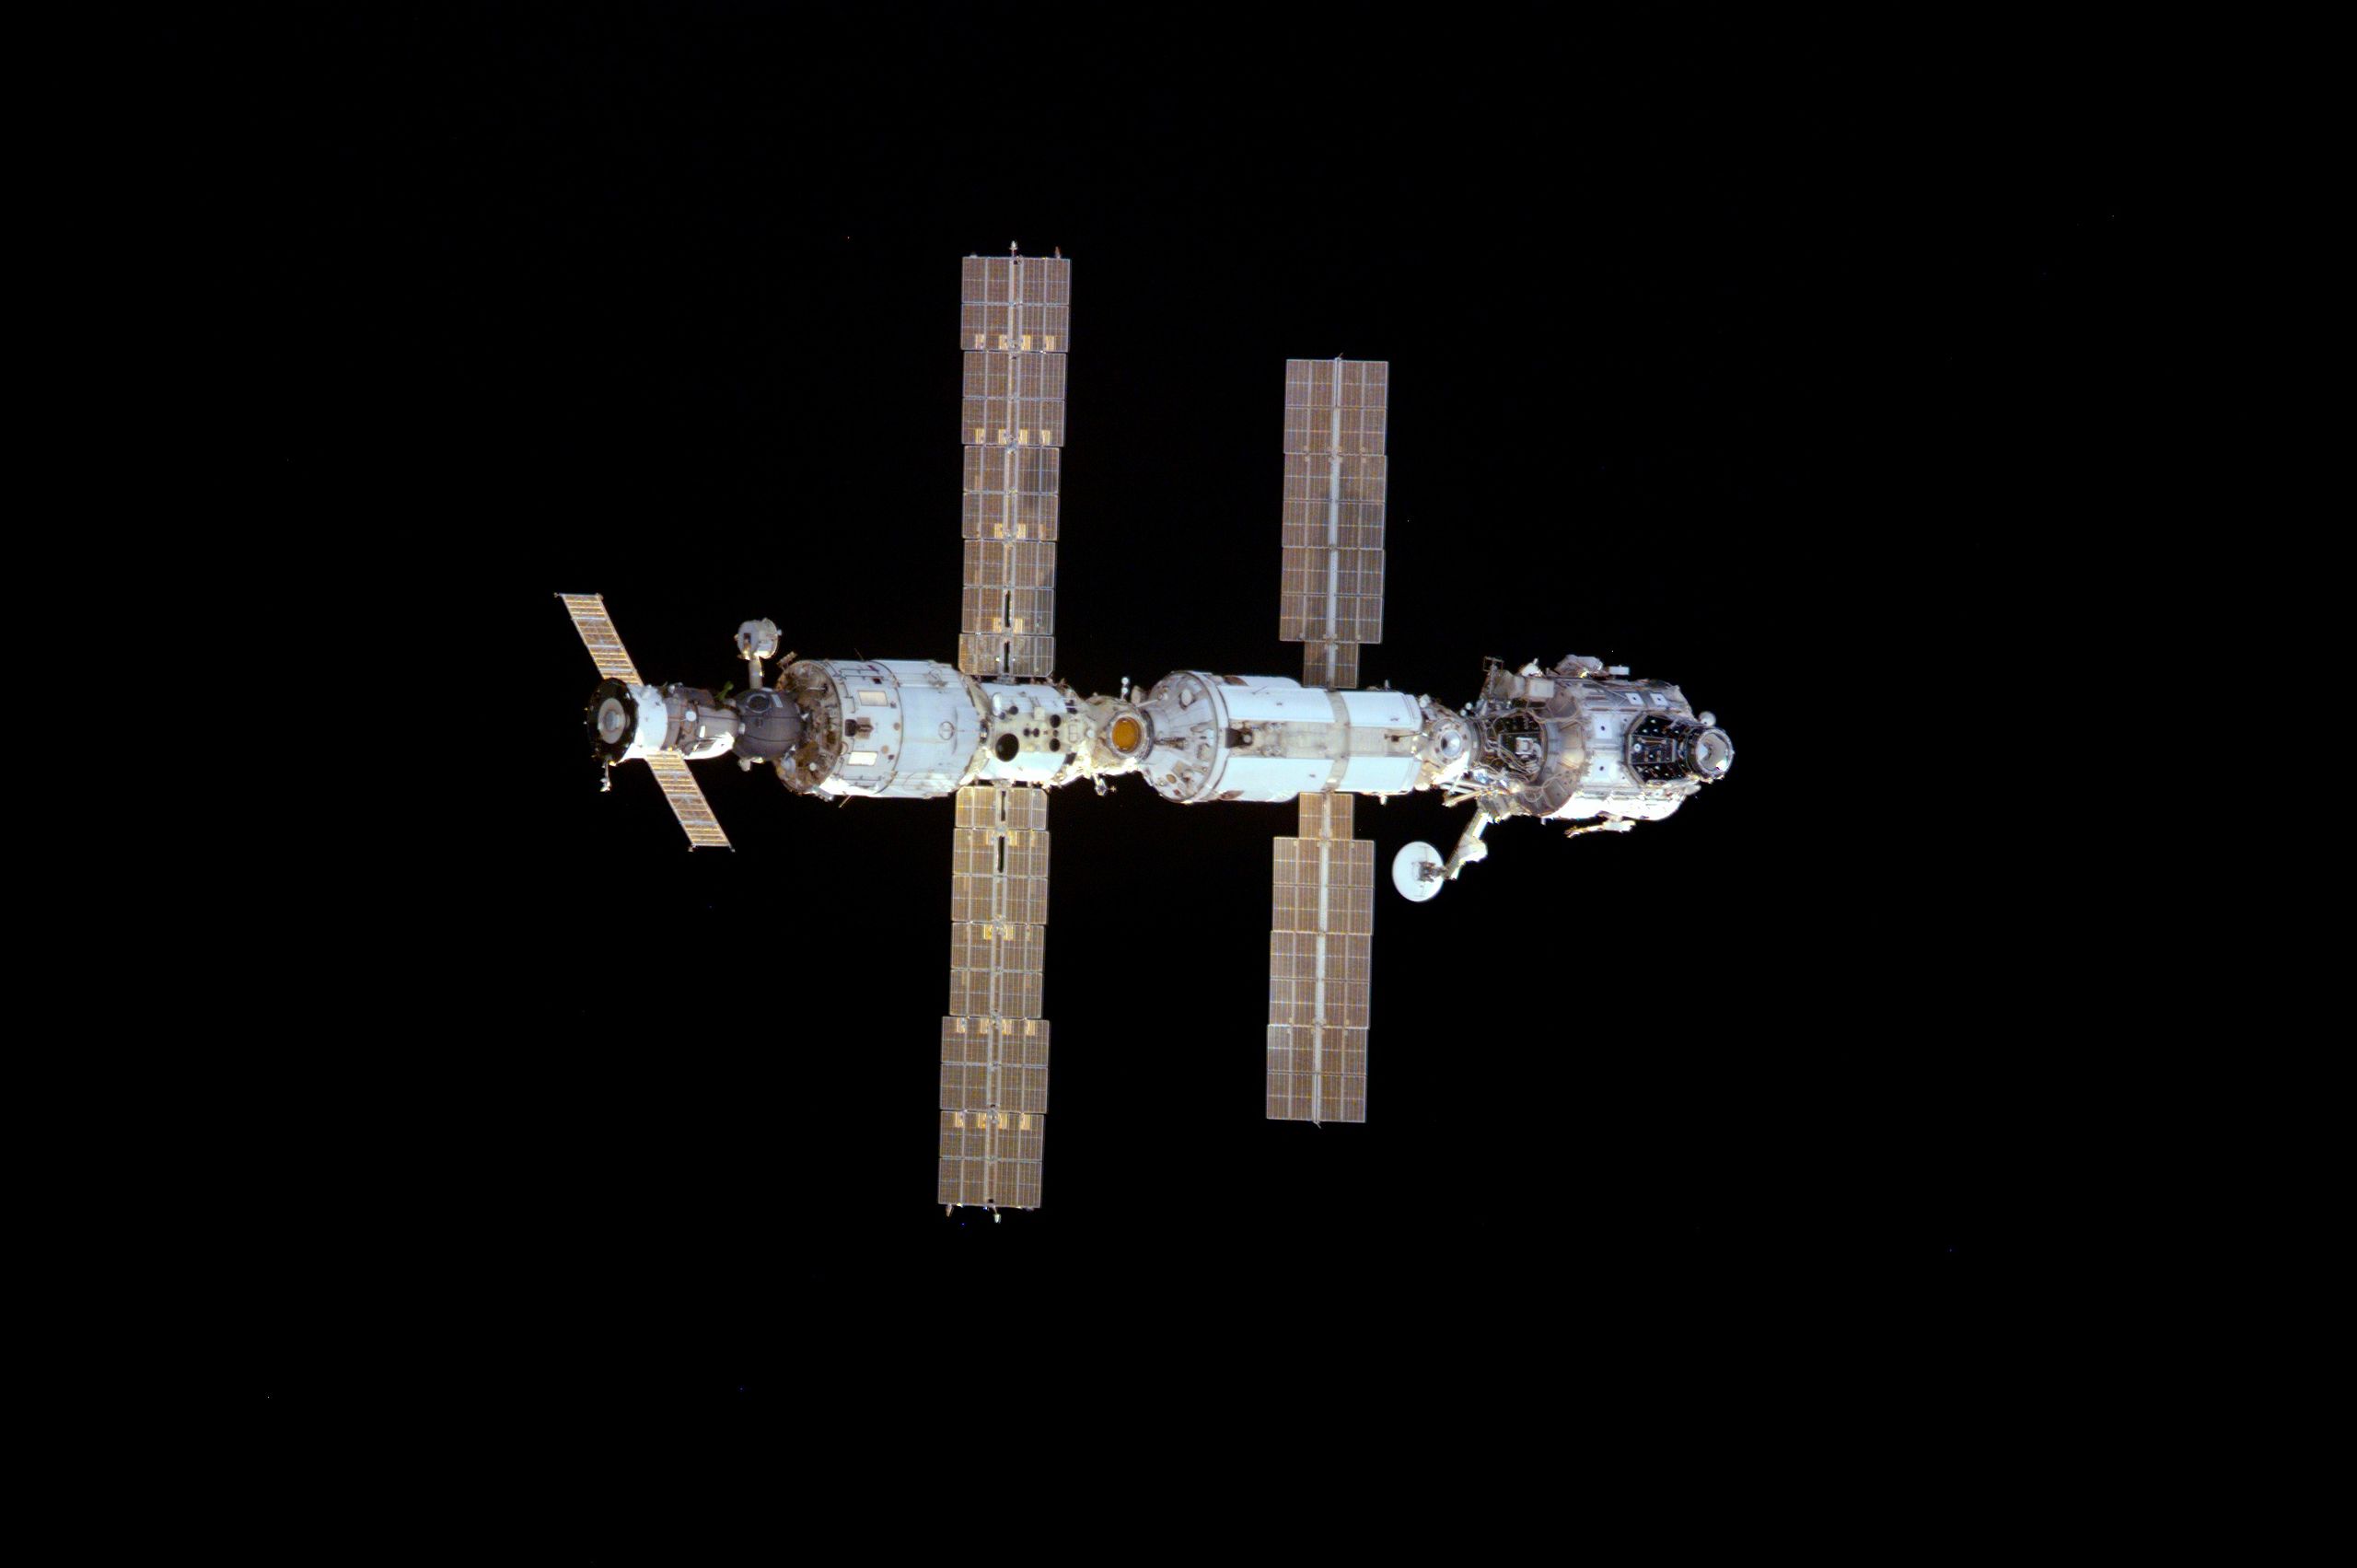 Az ISS 2000 decemberi állapota, az Endeavour űrsiklóról készült felvételen.